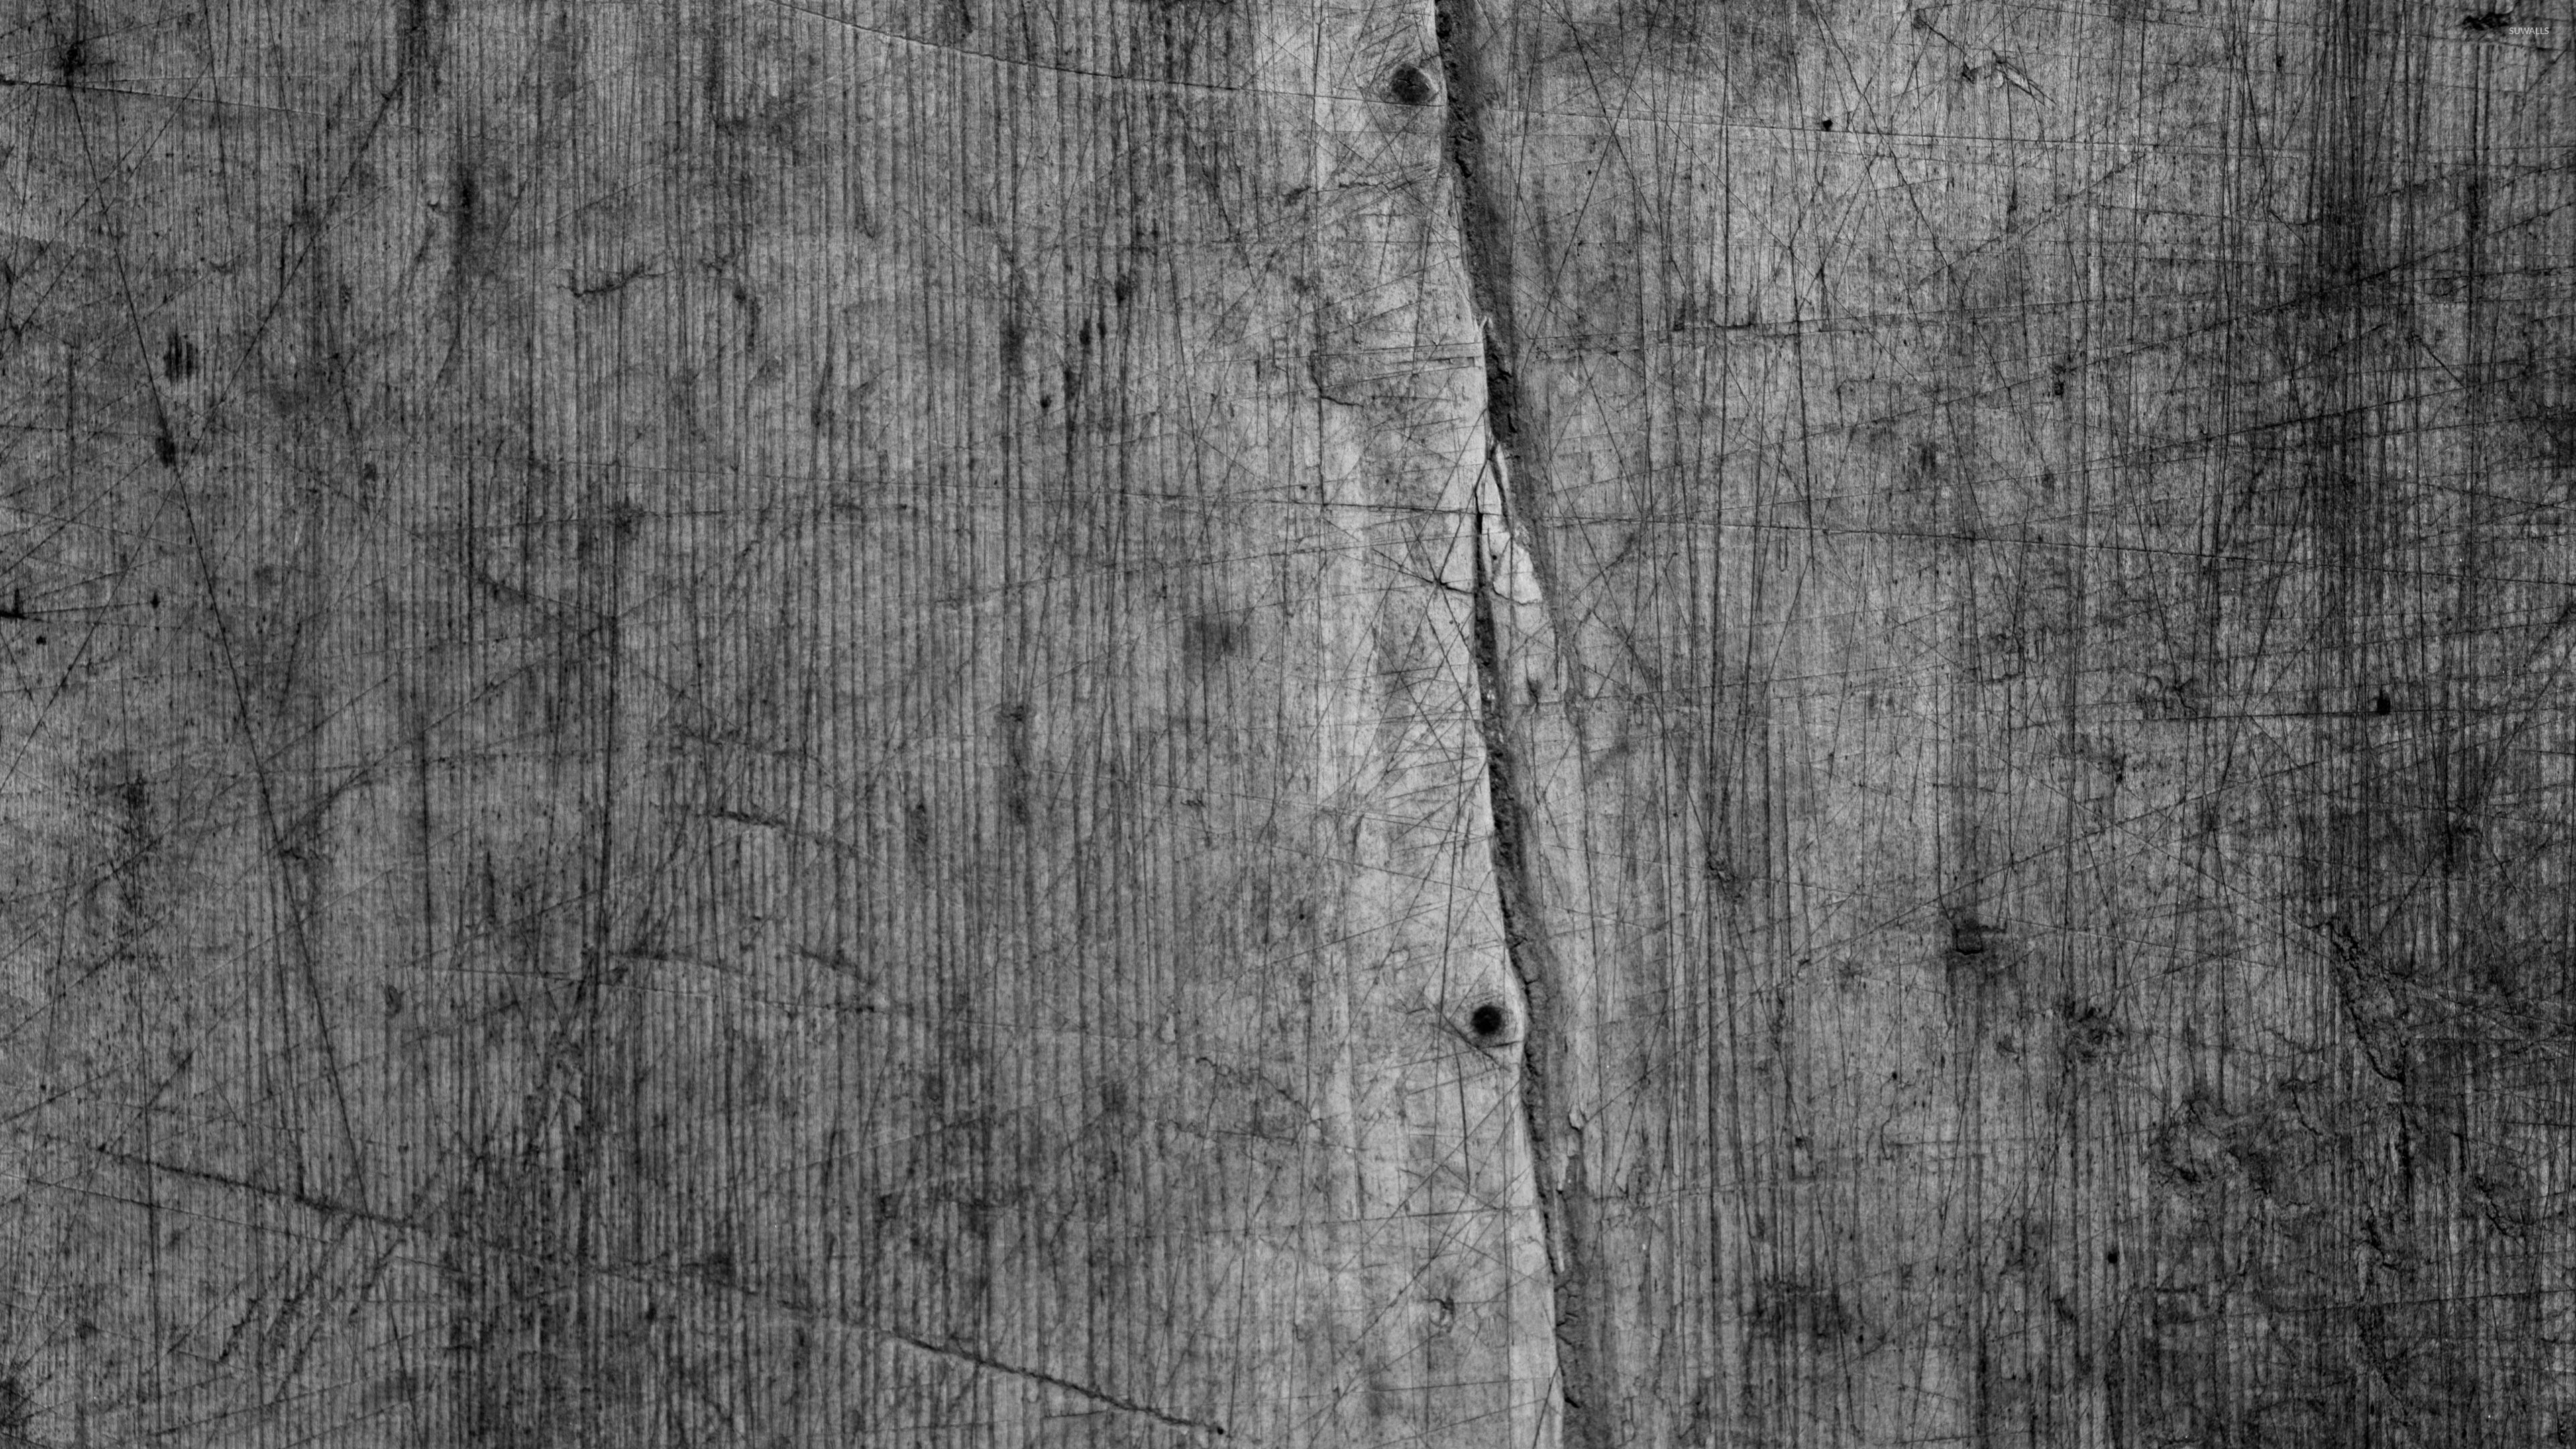 papier peint en bois gris,bois,planche,arbre,noir et blanc,photographie monochrome